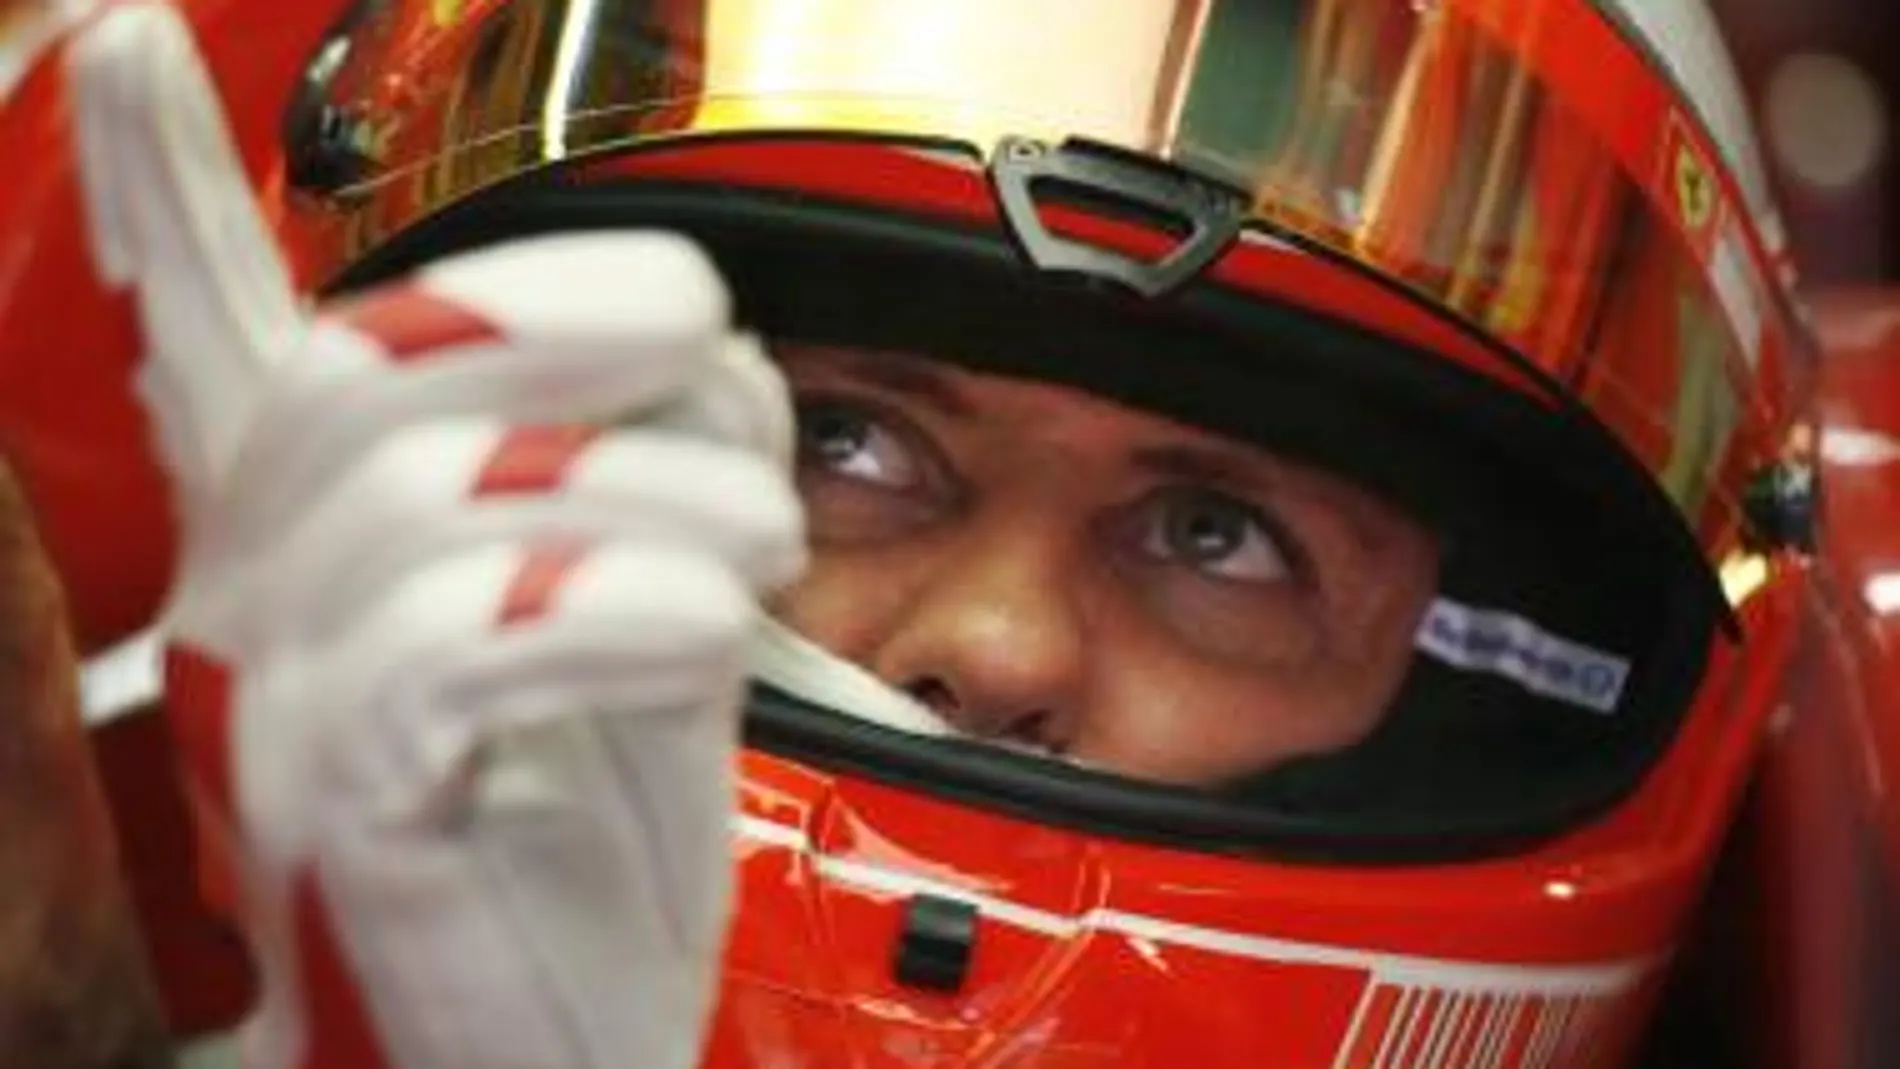 Michael Schumacher sustituirá a Massa hasta que se recupere, informó Ferrari